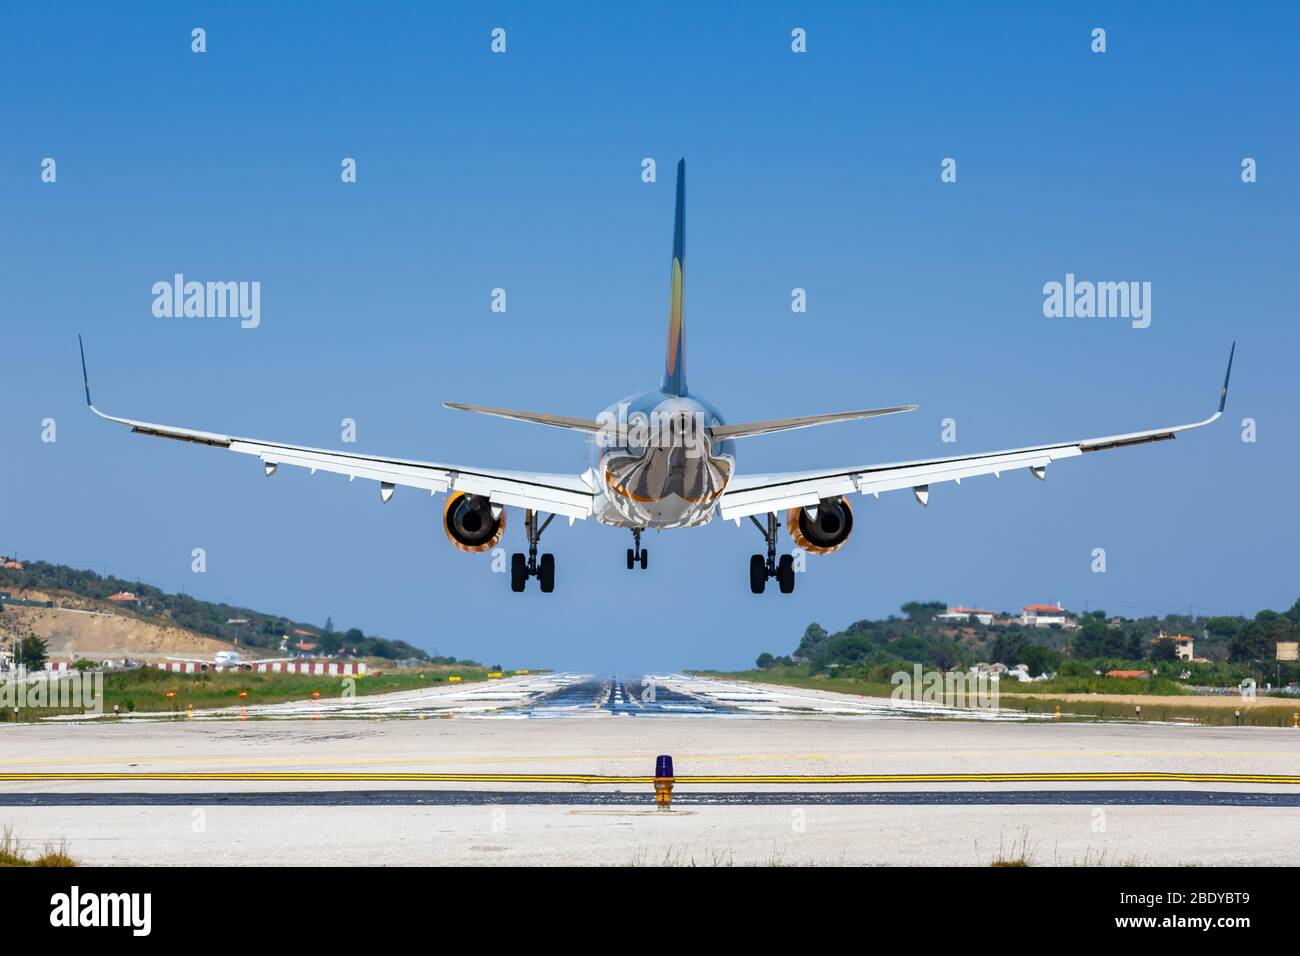 Skiathos, Grèce – 31 juillet 2019 : avion Airbus de Thomas Cook Airlines à l'aéroport de Skiathos (JSI) en Grèce. Airbus est un constructeur européen d'avions Banque D'Images